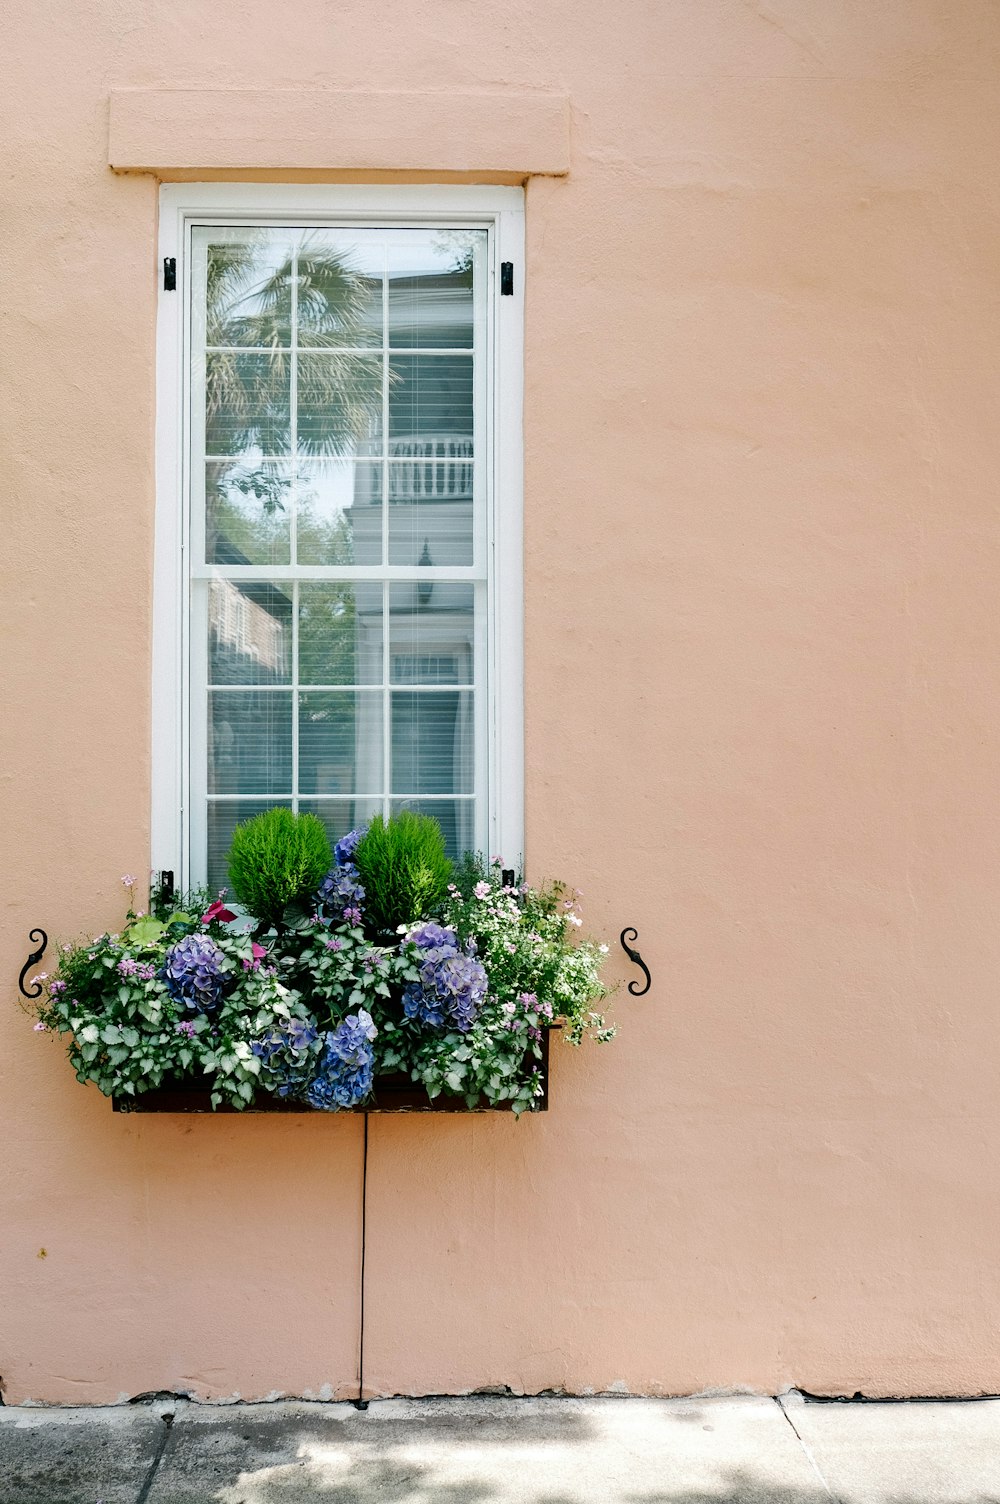 fiori viola e bianchi sulla finestra